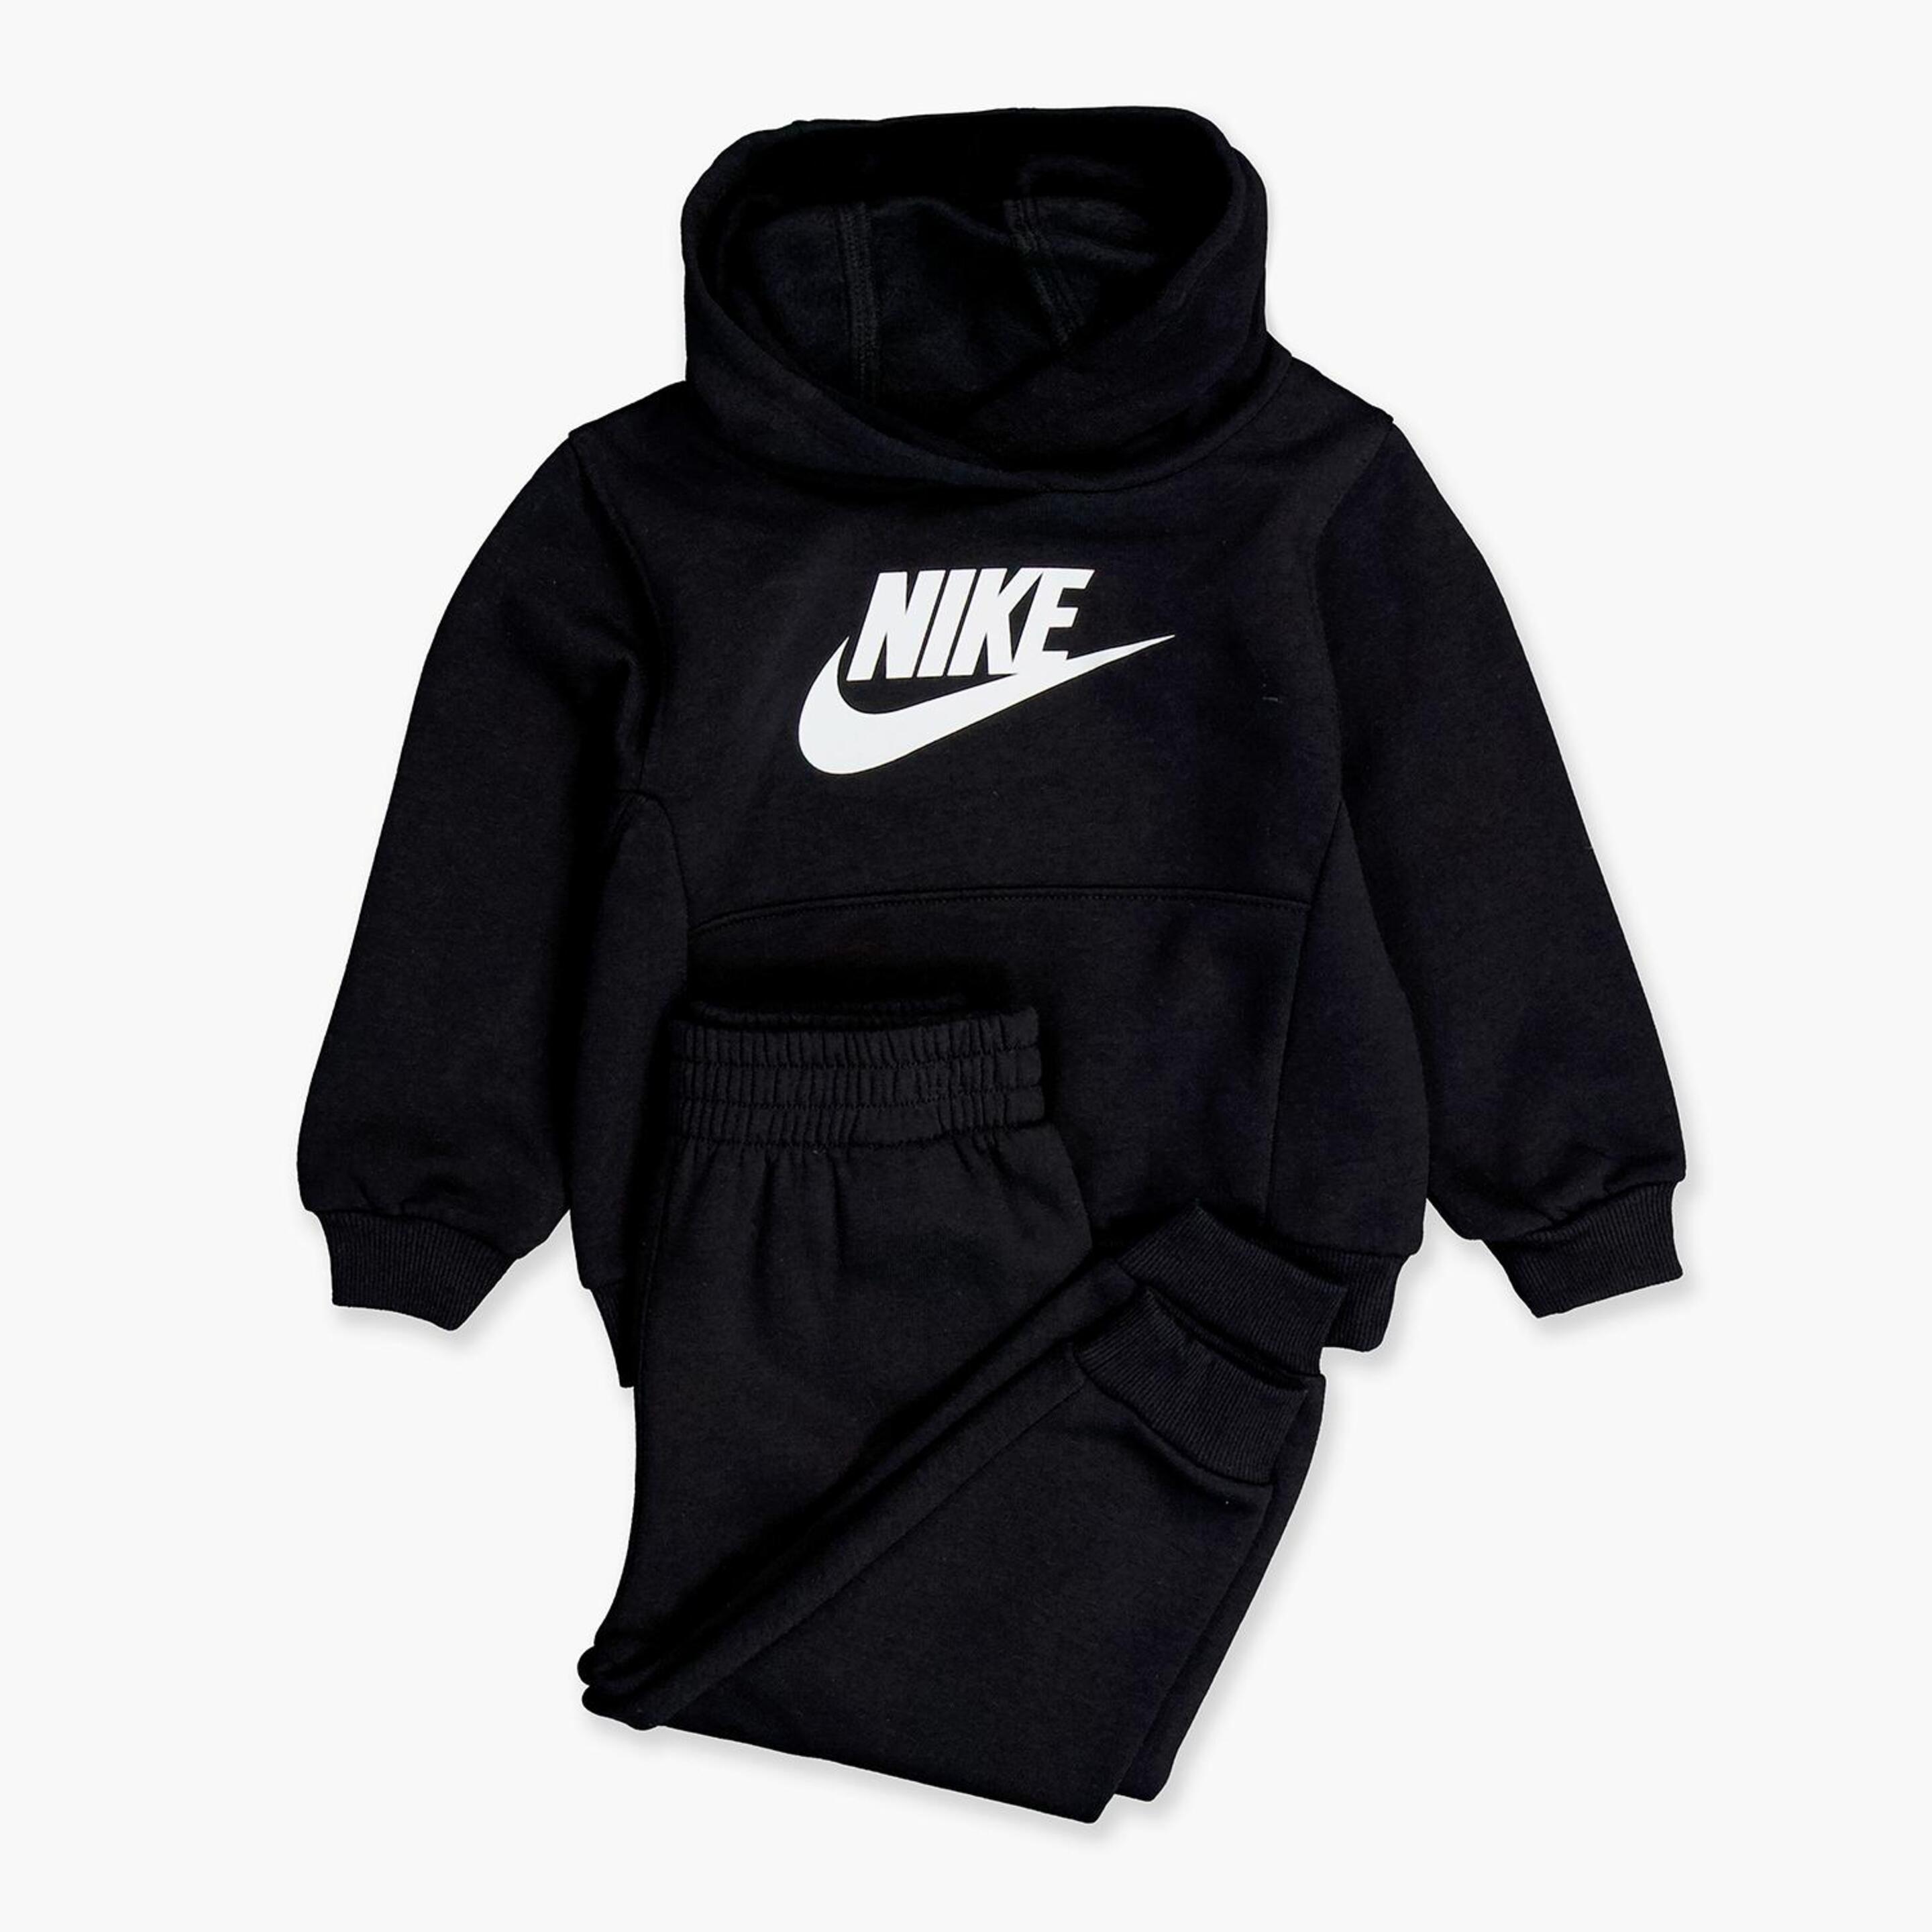 Chándal Nike - negro - Chándal Bebé